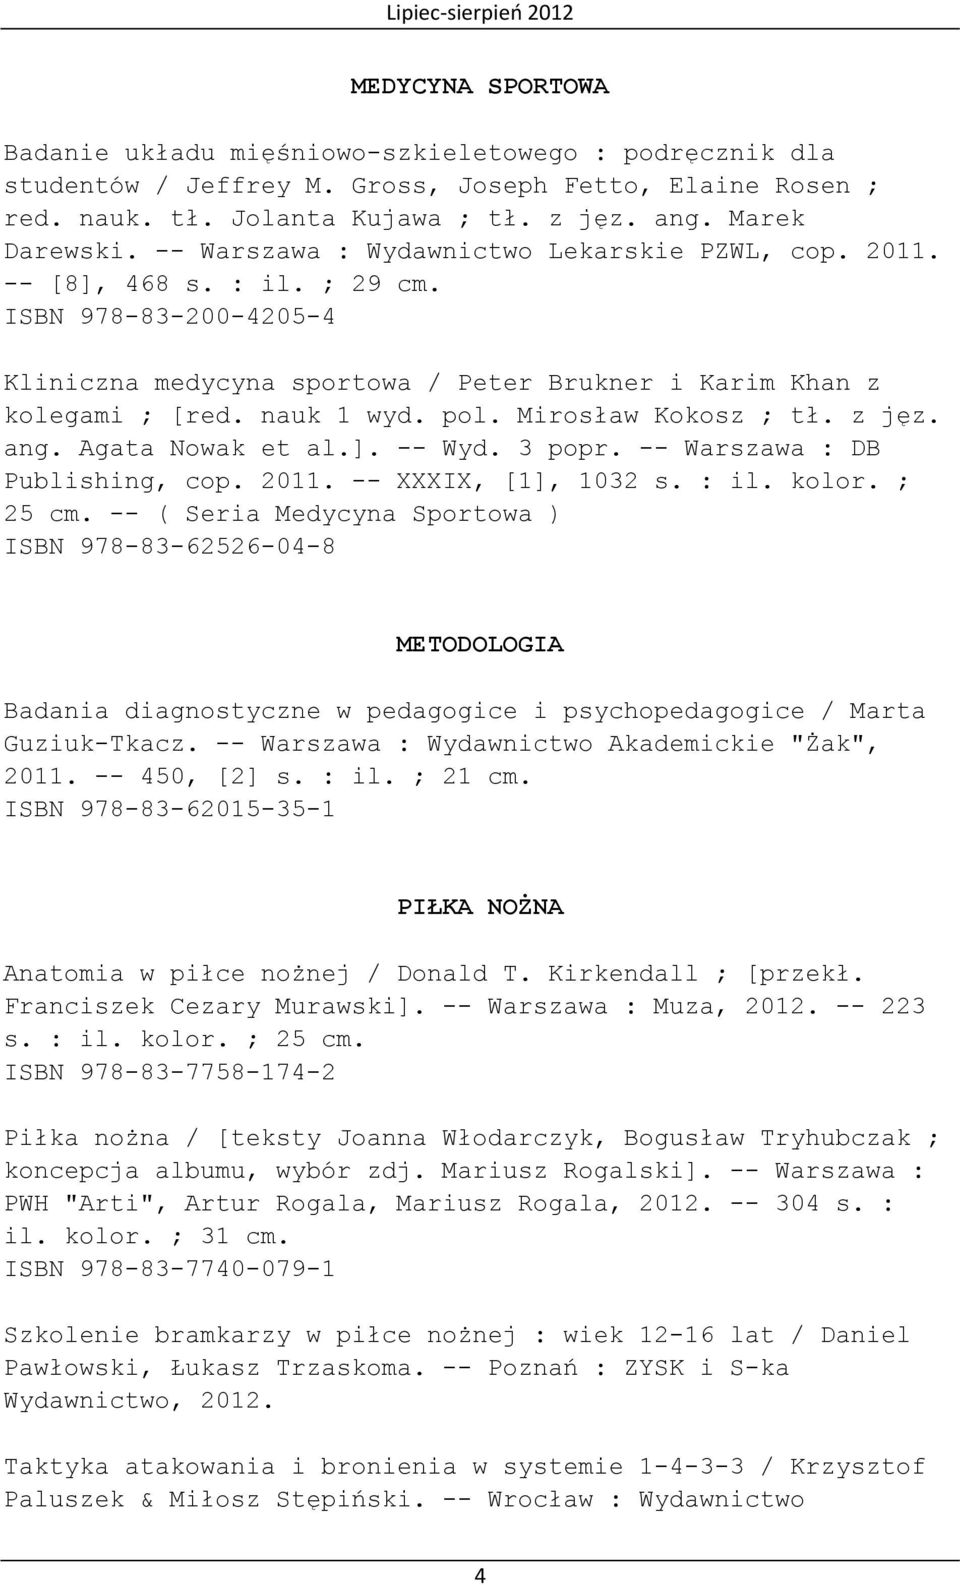 Mirosław Kokosz ; tł. z jęz. ang. Agata Nowak et al.]. -- Wyd. 3 popr. -- Warszawa : DB Publishing, cop. 2011. -- XXXIX, [1], 1032 s. : il. kolor. ; 25 cm.